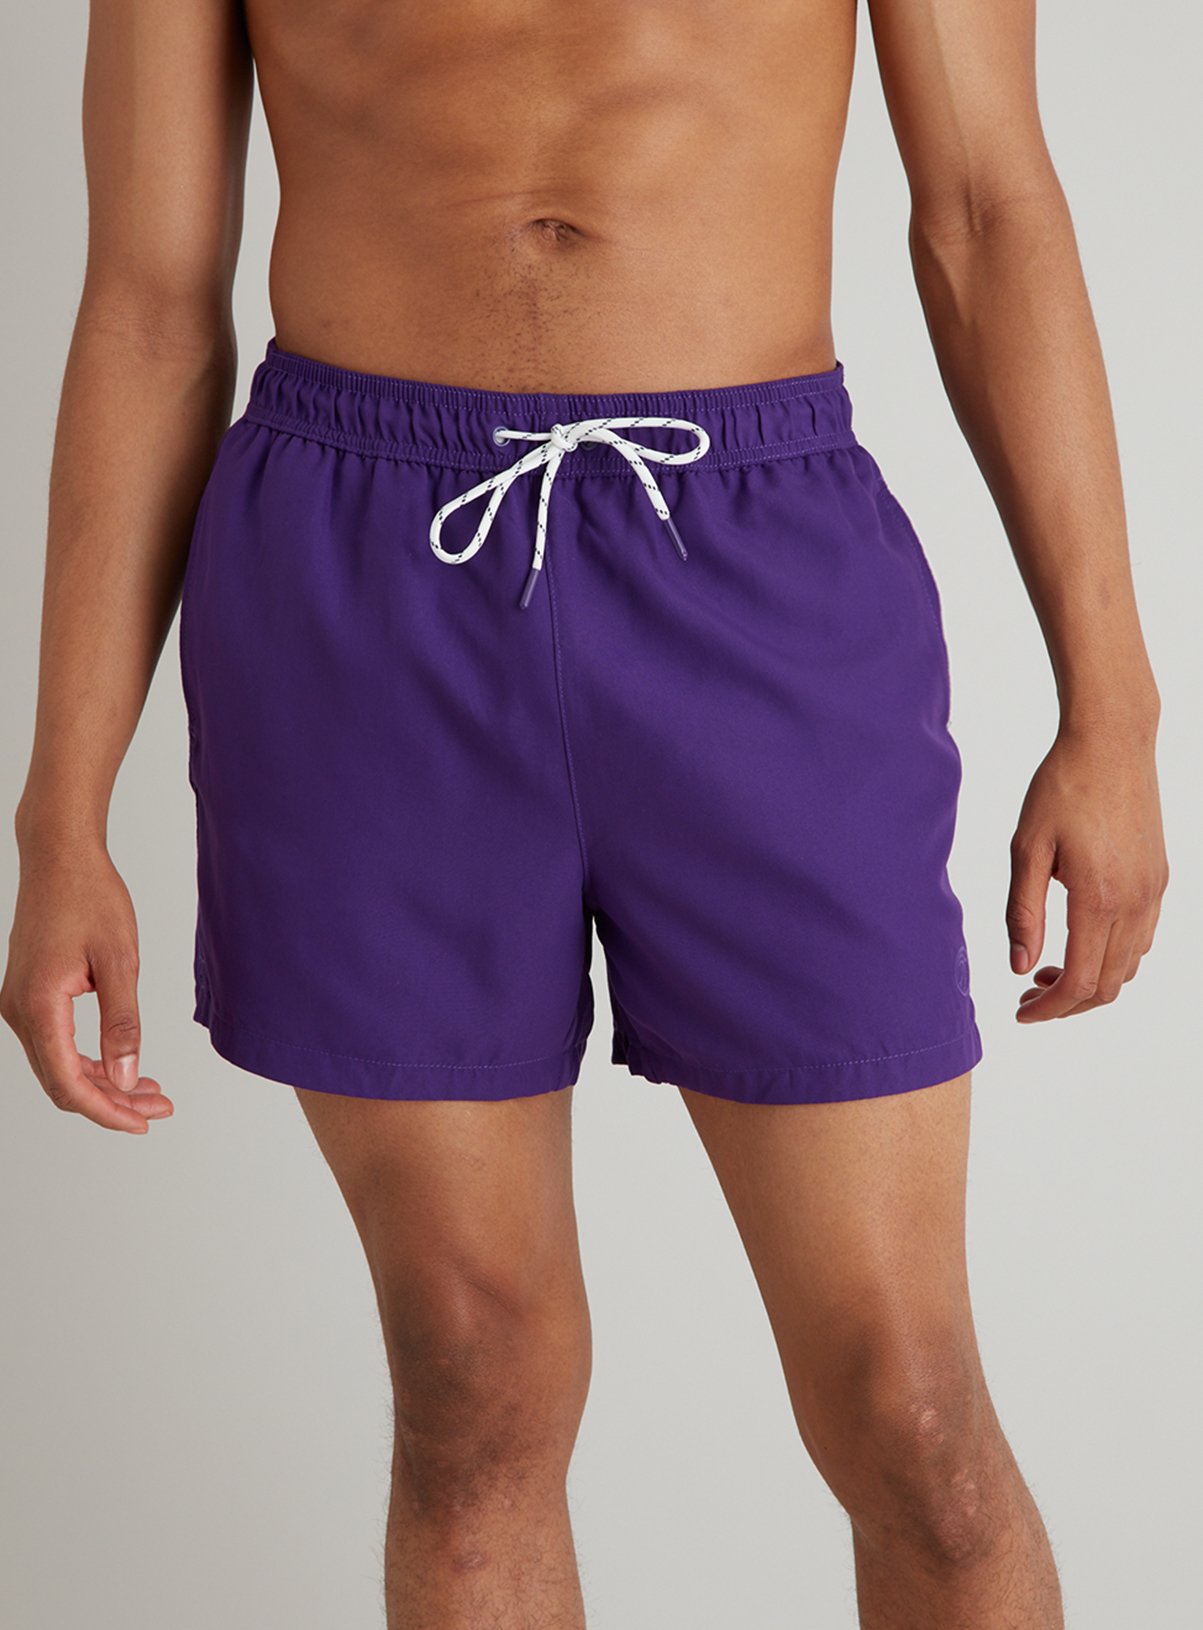 purple swim trunks